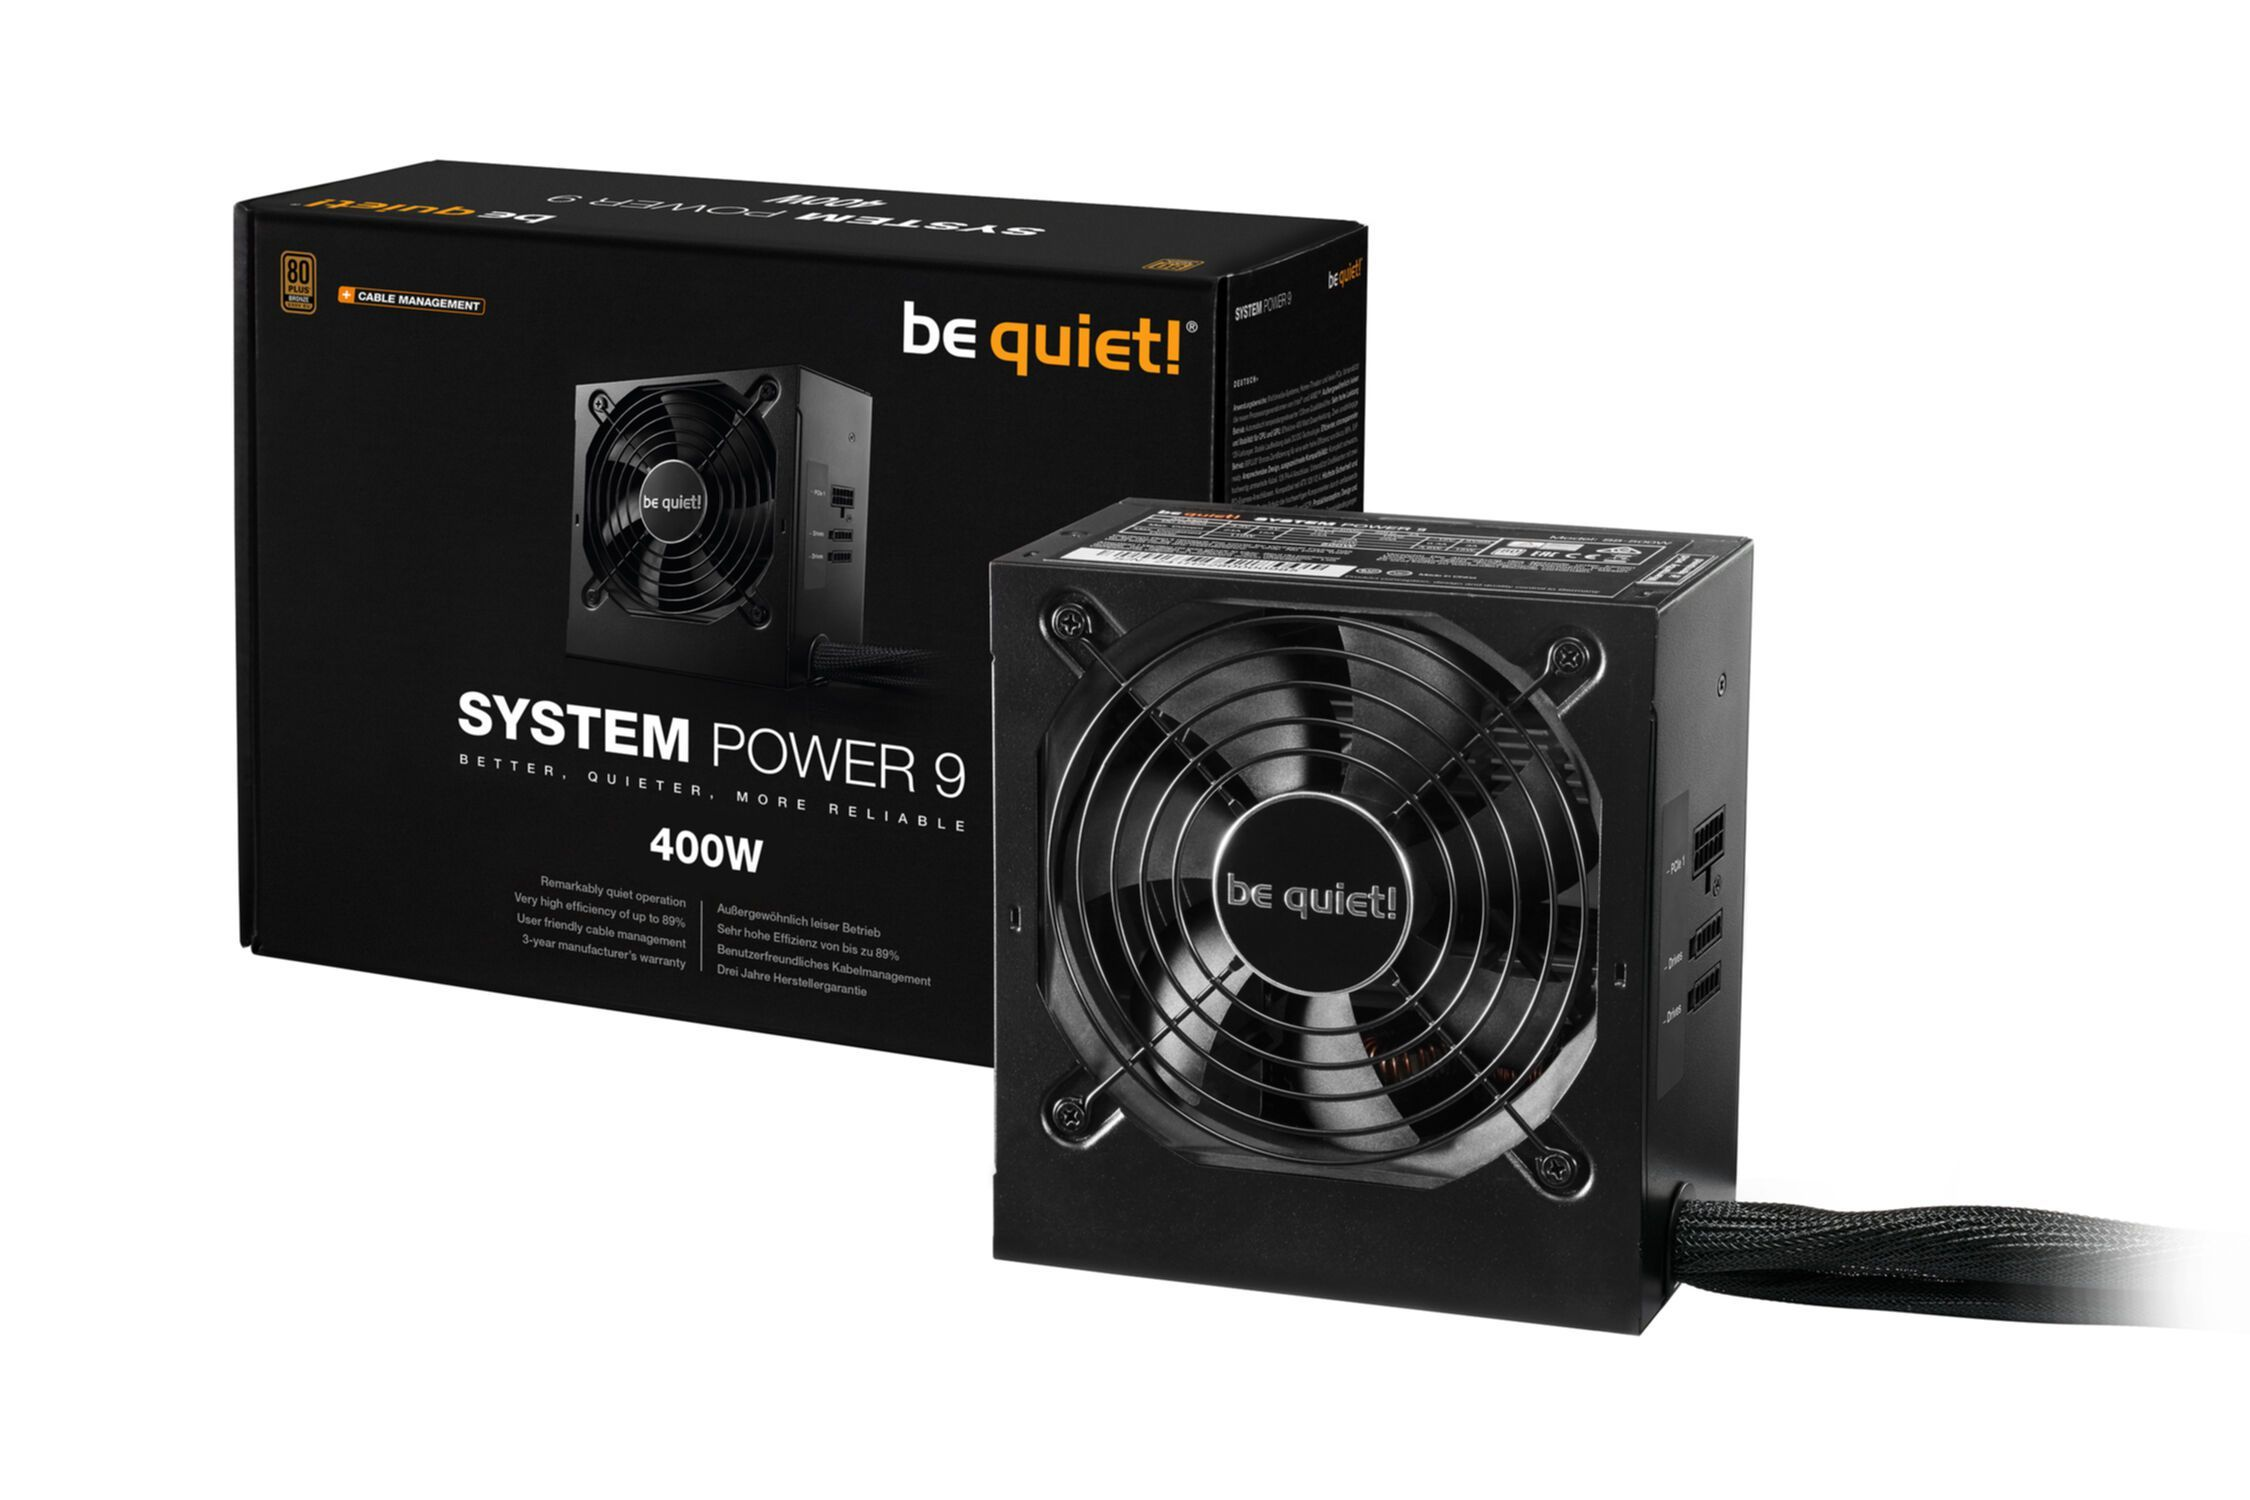 BE QUIET! System PC 400W Power 9 CM , Watt 400 Netzteil